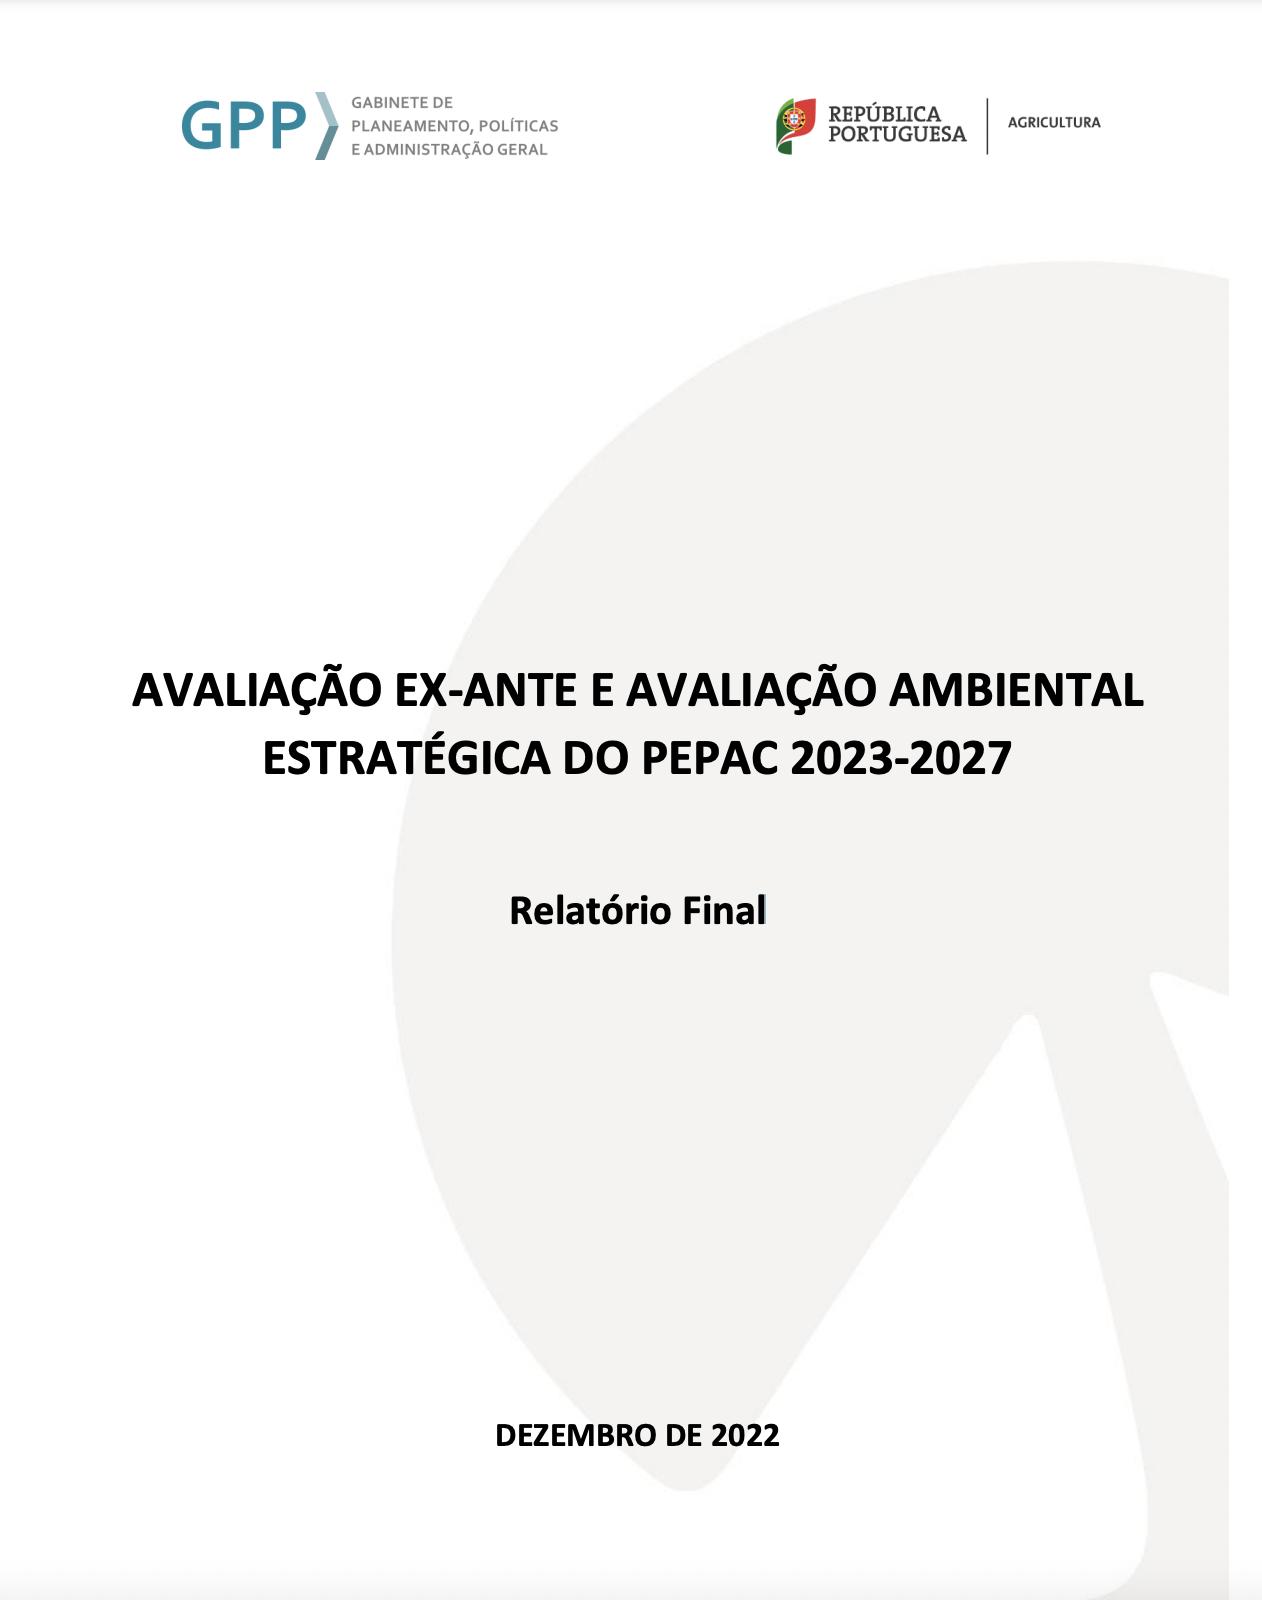 Avaliação ex-ante e avaliação ambiental estratégica do PEPAC 2023-2027 – Relatório Final